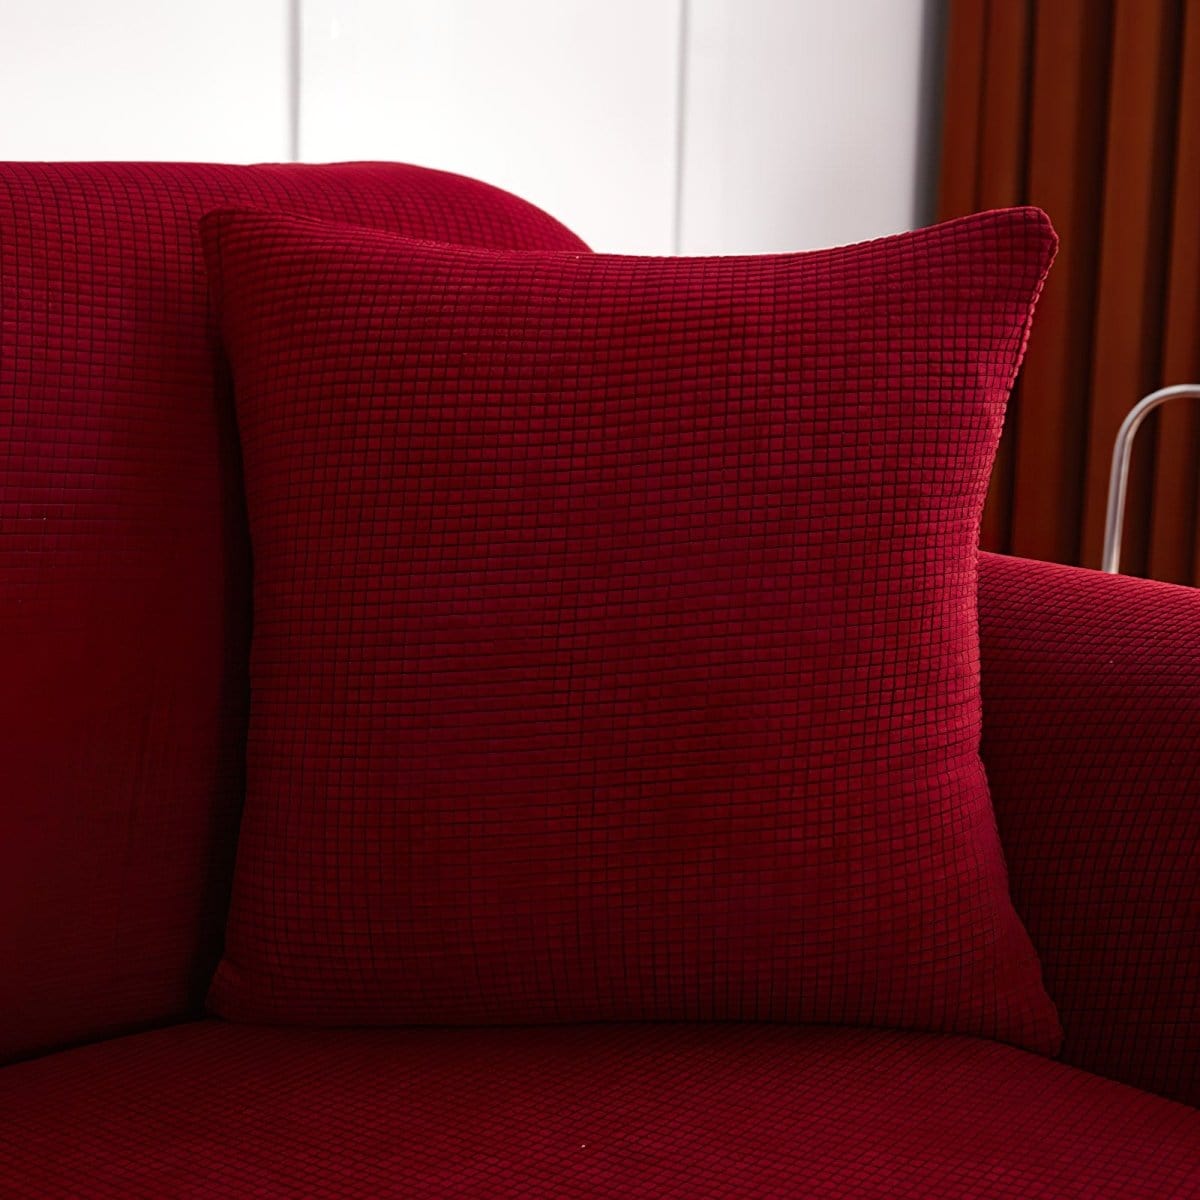 Lot de 2 housses de coussins carrés décoratifs pour l'extérieur, housses de coussin  pour chaise, 16 x 16 pouces, 40 cm, rouge foncé